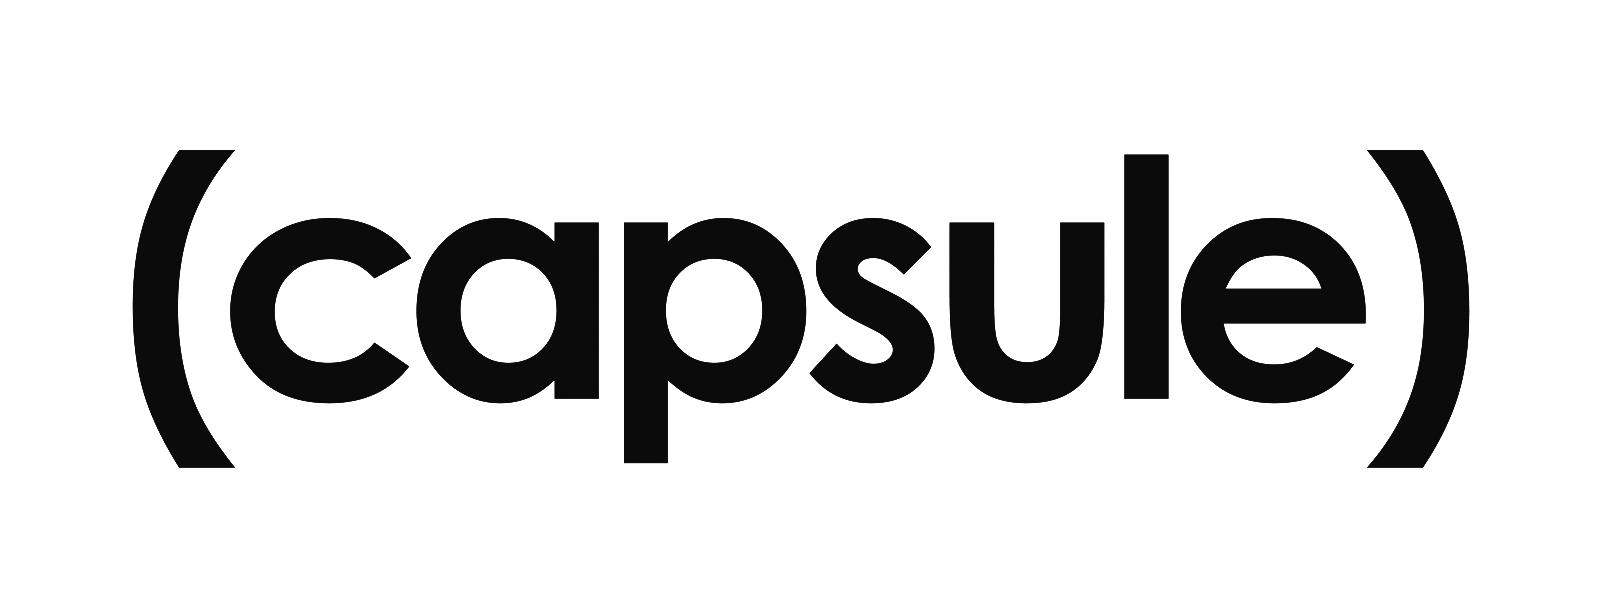 Capsule_logo.png